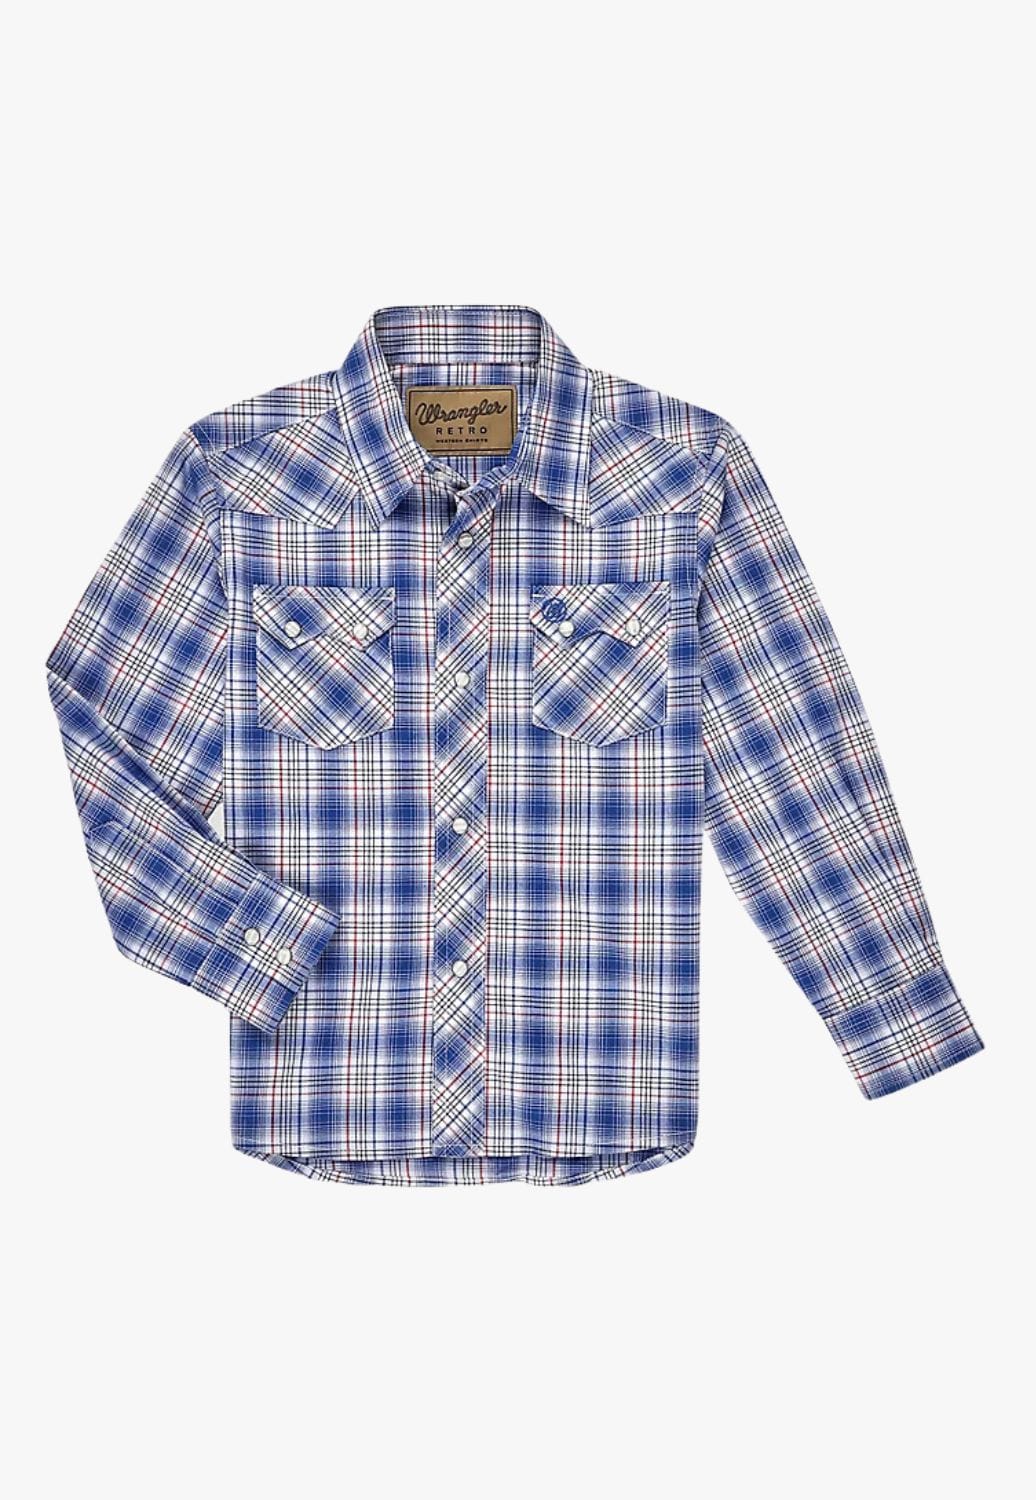 Wrangler CLOTHING-Boys Long Sleeve Shirts Wrangler Boys Plaid Snap Long Sleeve Shirt